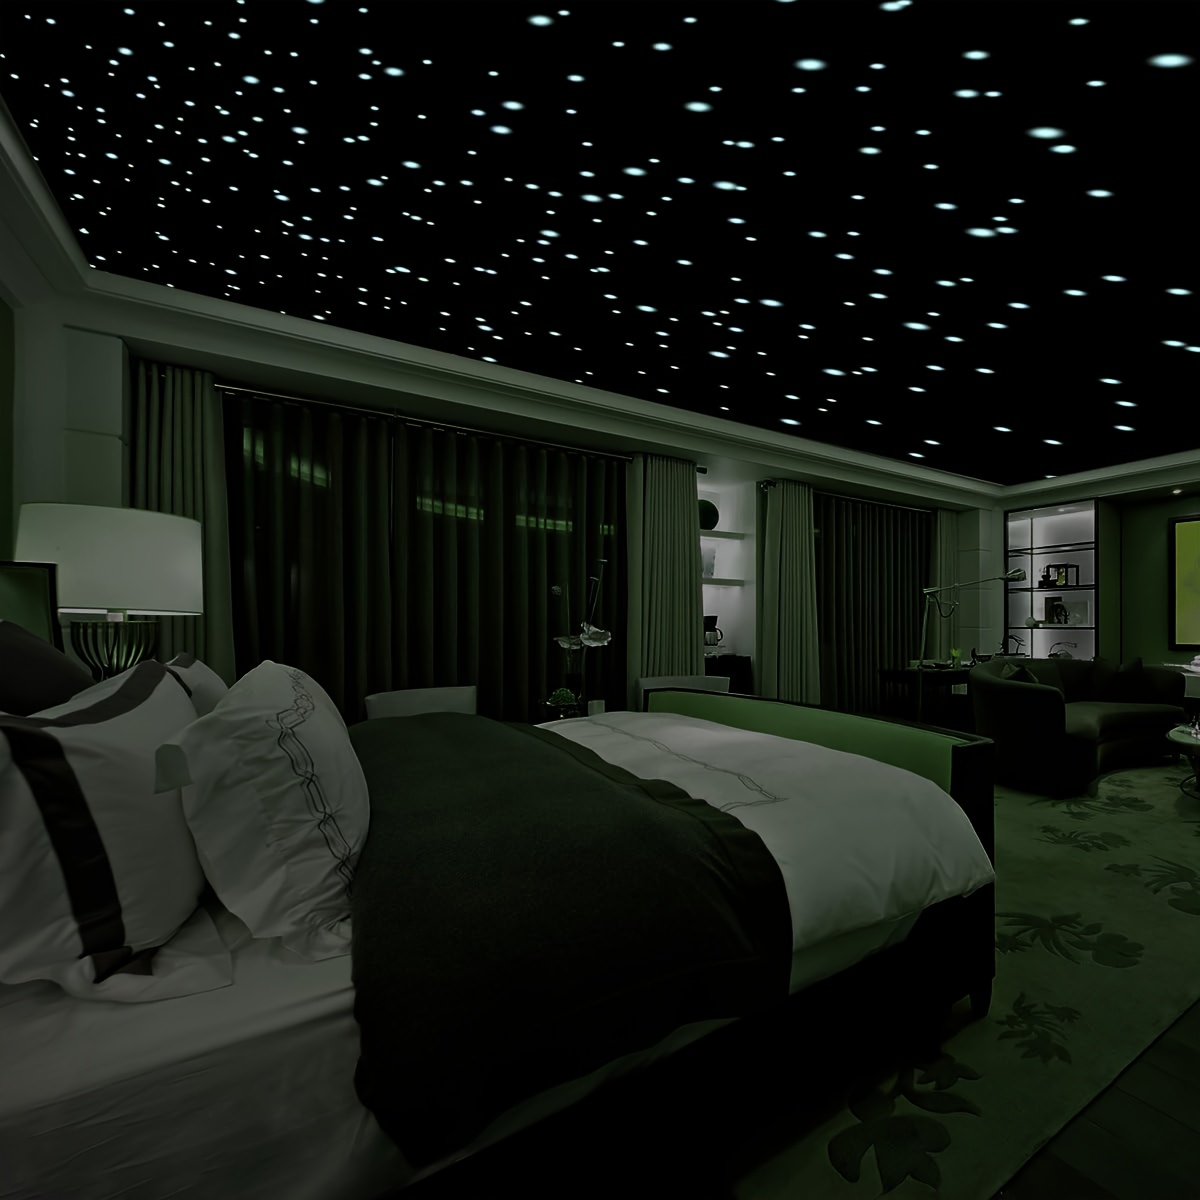 Habitaciones con estrellas en el techo mágicas - Decoratips